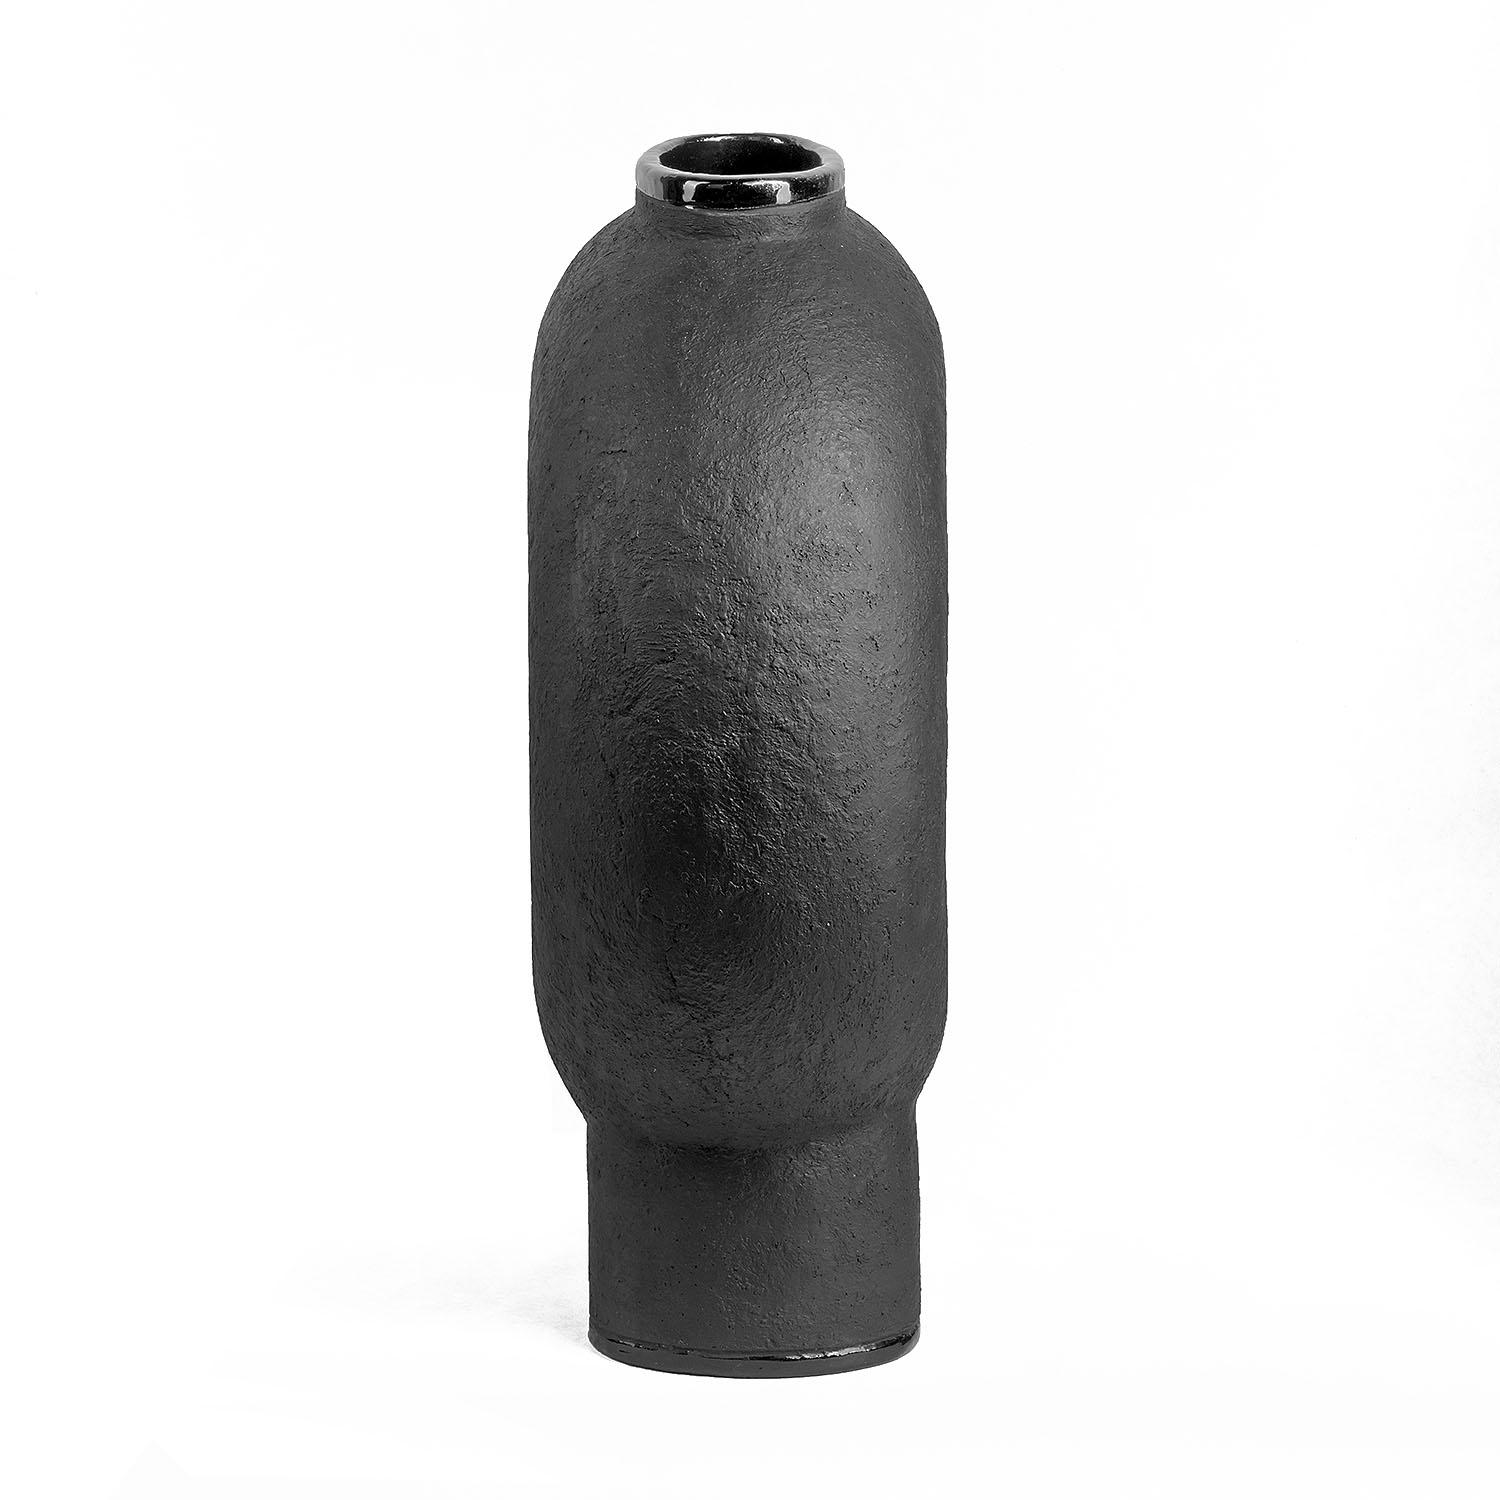 Zeitgenössische Vase aus schwarzer Keramik - Kumanec Vase mit zwei Beinen von Faina

Entwurf: Victoriya Yakusha
MATERIAL: Material: Ton/Keramik
Abmessungen:
Klein: 20,5 x 9 x H 19 cm
Bigli: 31,5 x 15 x H 50 cm


(